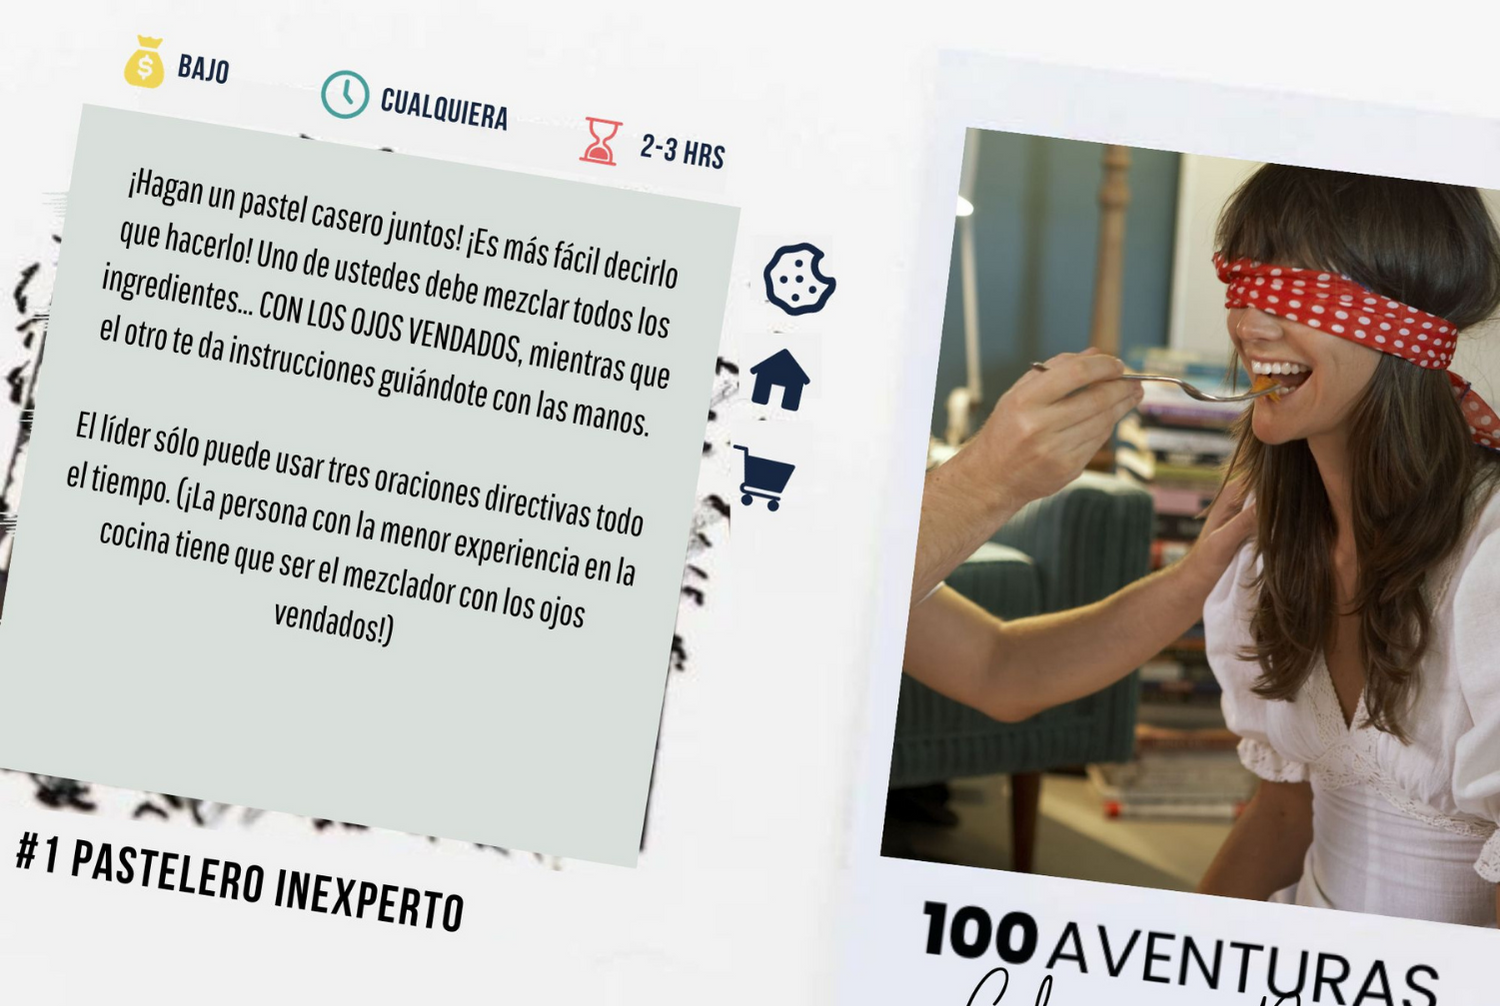 100 Aventuras en Pareja. Album con 100 Aventuras para realizar con tu  Pareja y volver a conectar como en la primera cita – 100Aventuras Colombia